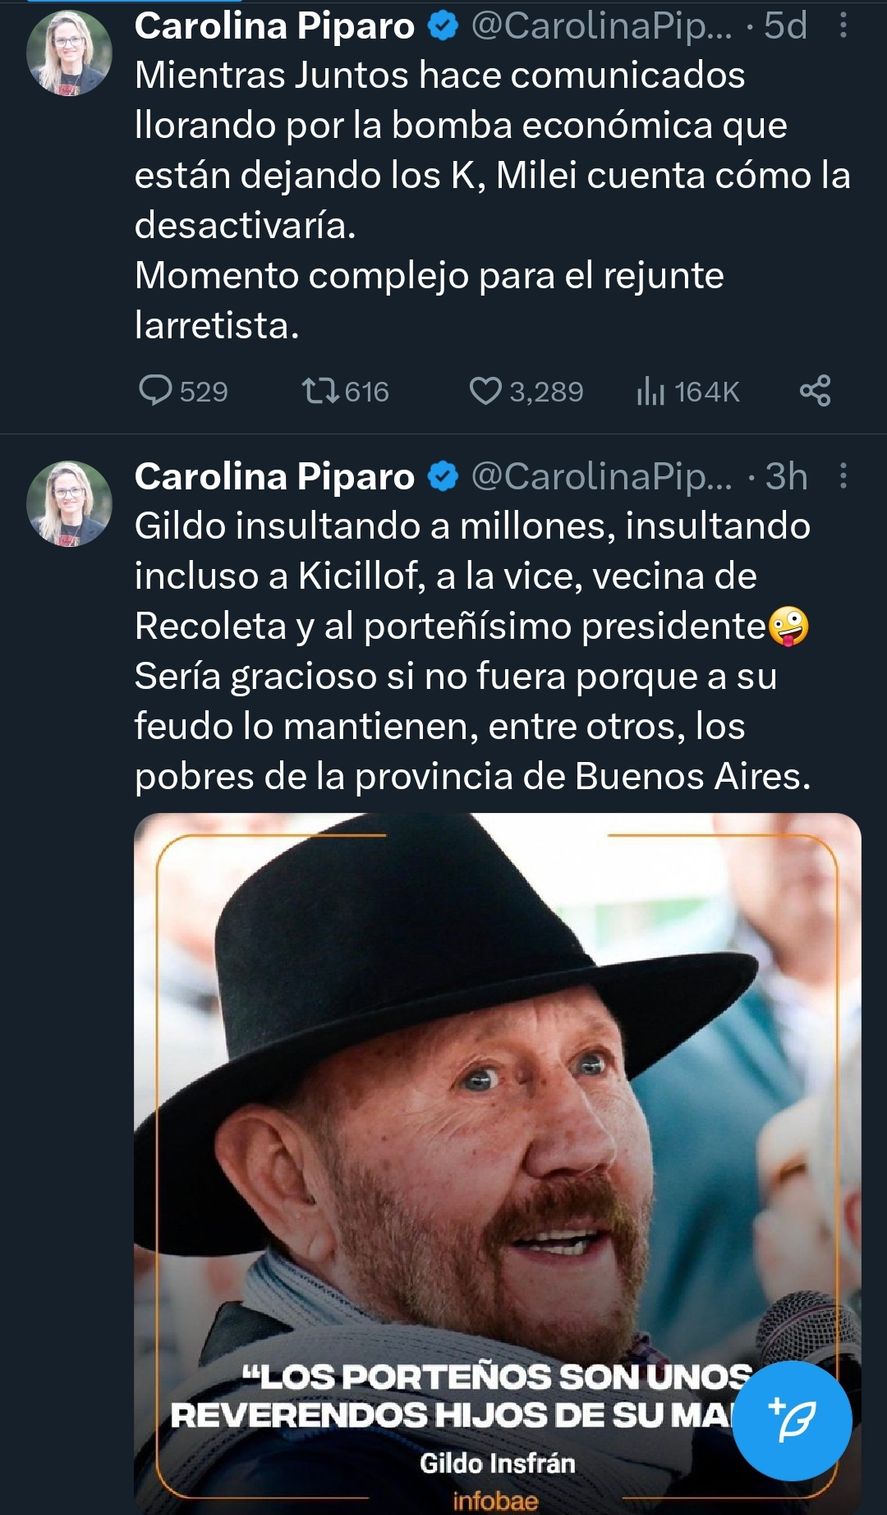 Carolina Píparo siempre se muestra muy activa en redes sociales atacando a Juntos por el Cambio y al peronismo por igual. Ahora va por Julio Garro para disputar la intendencia de la ciudad de La Plata 